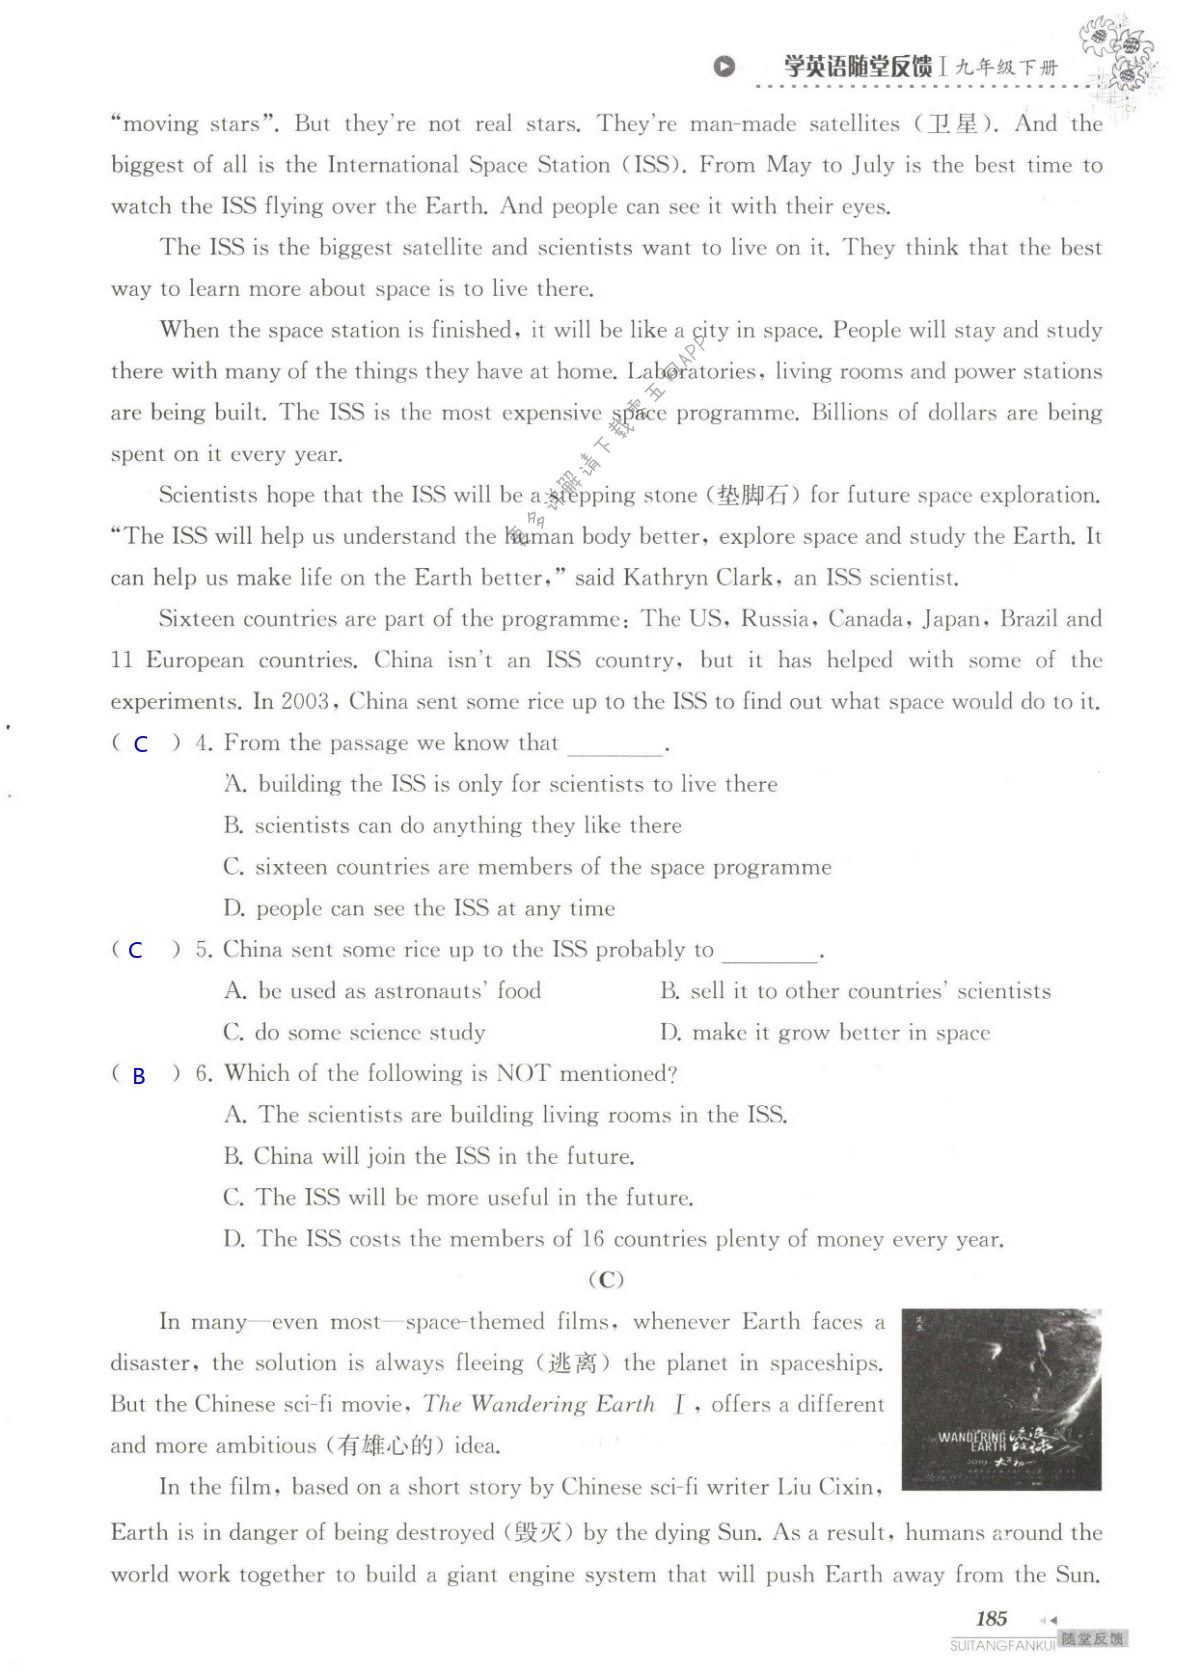 单元综合测试卷 Test for Unit 4 of 9B - 第185页